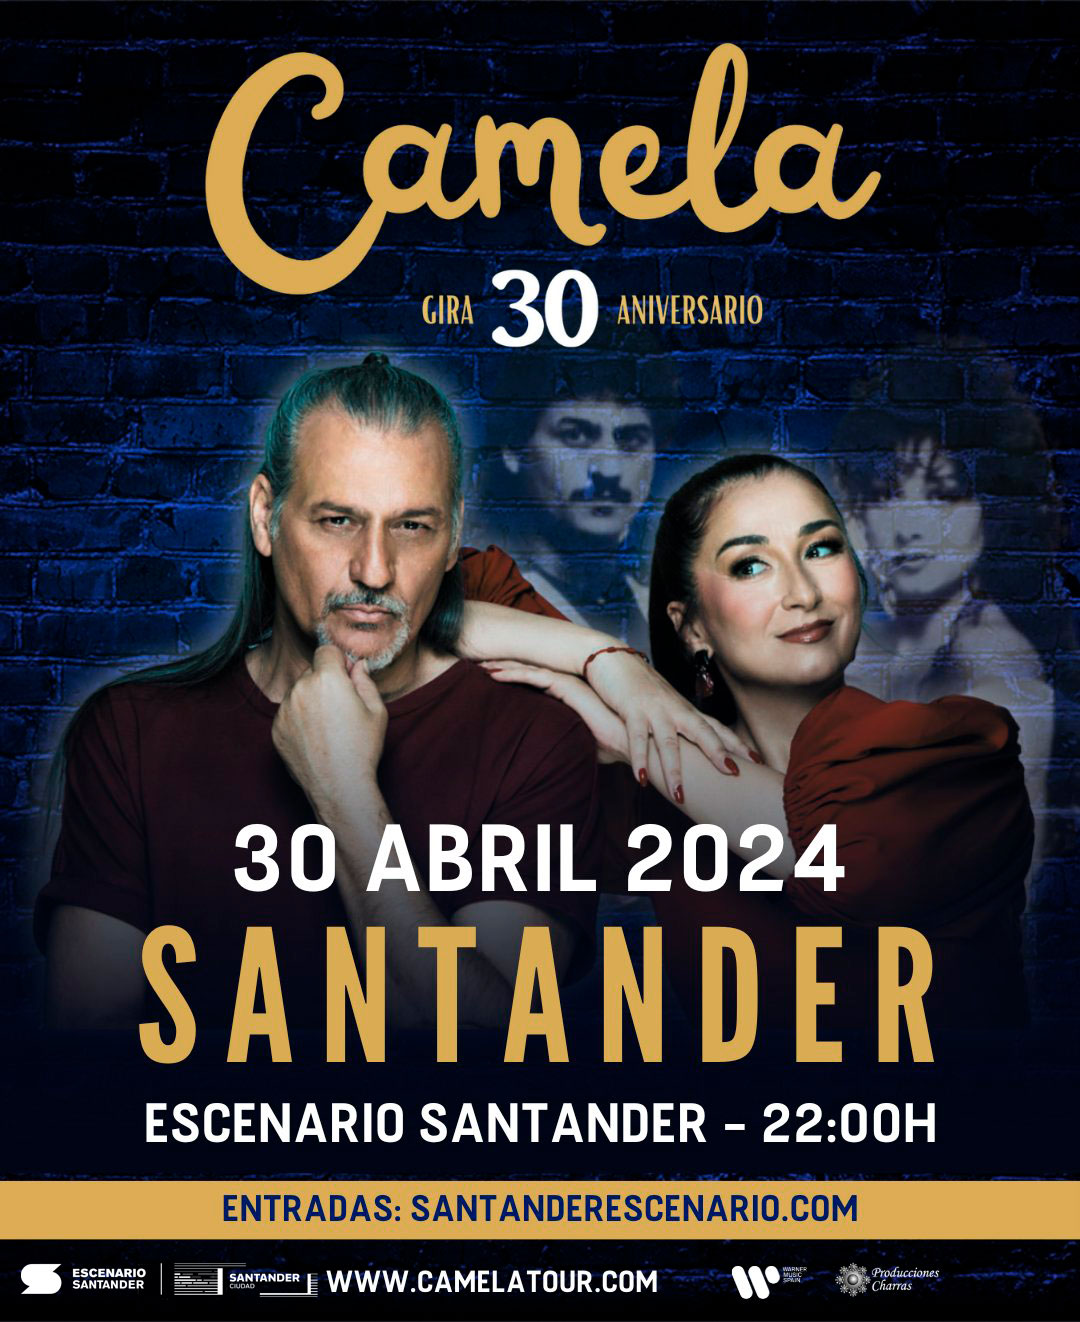 Concierto Camela en Santander el 30 de abril de 2024 a las 22:00h, en la Sala Escenario Santander.